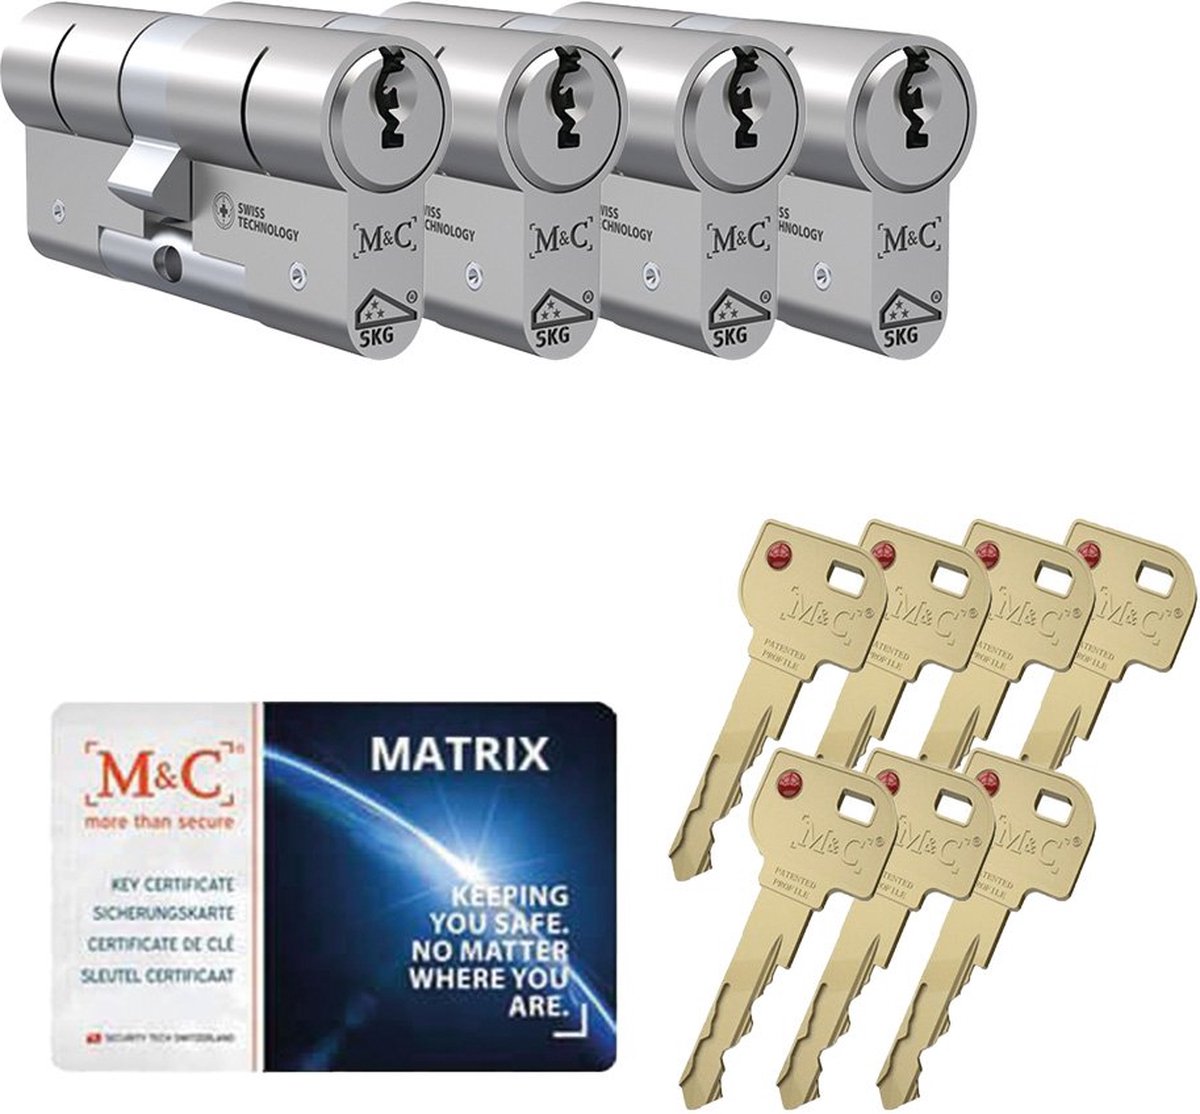 M&C Matrix SKG*** cilinderslot gelijksluitende set van 4